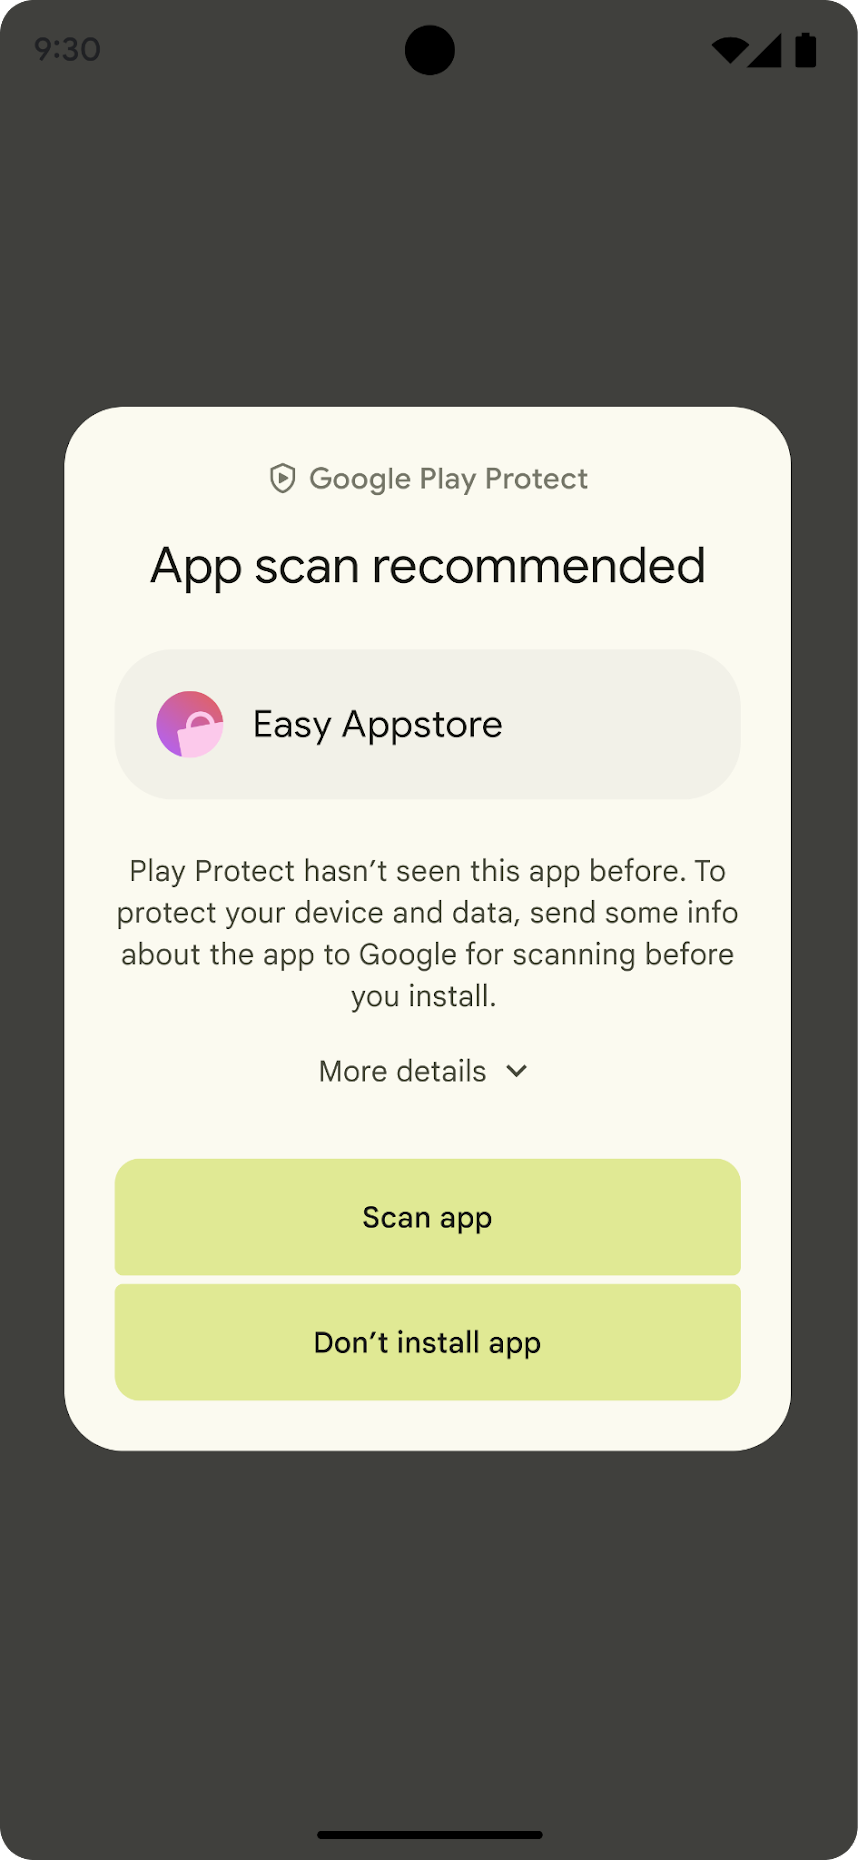 대화상자에 있는 두 개의 버튼(위에서 아래로)은 Scan app(앱 검색)과 Don&#39;t install app(앱 설치 안함)입니다.